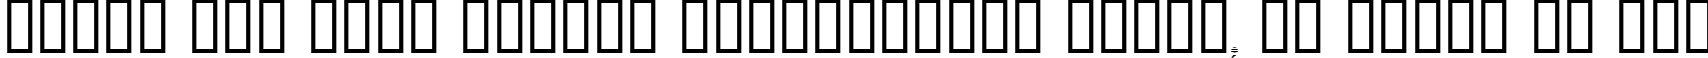 Пример написания шрифтом Dumbledor 3 Cut Down текста на русском